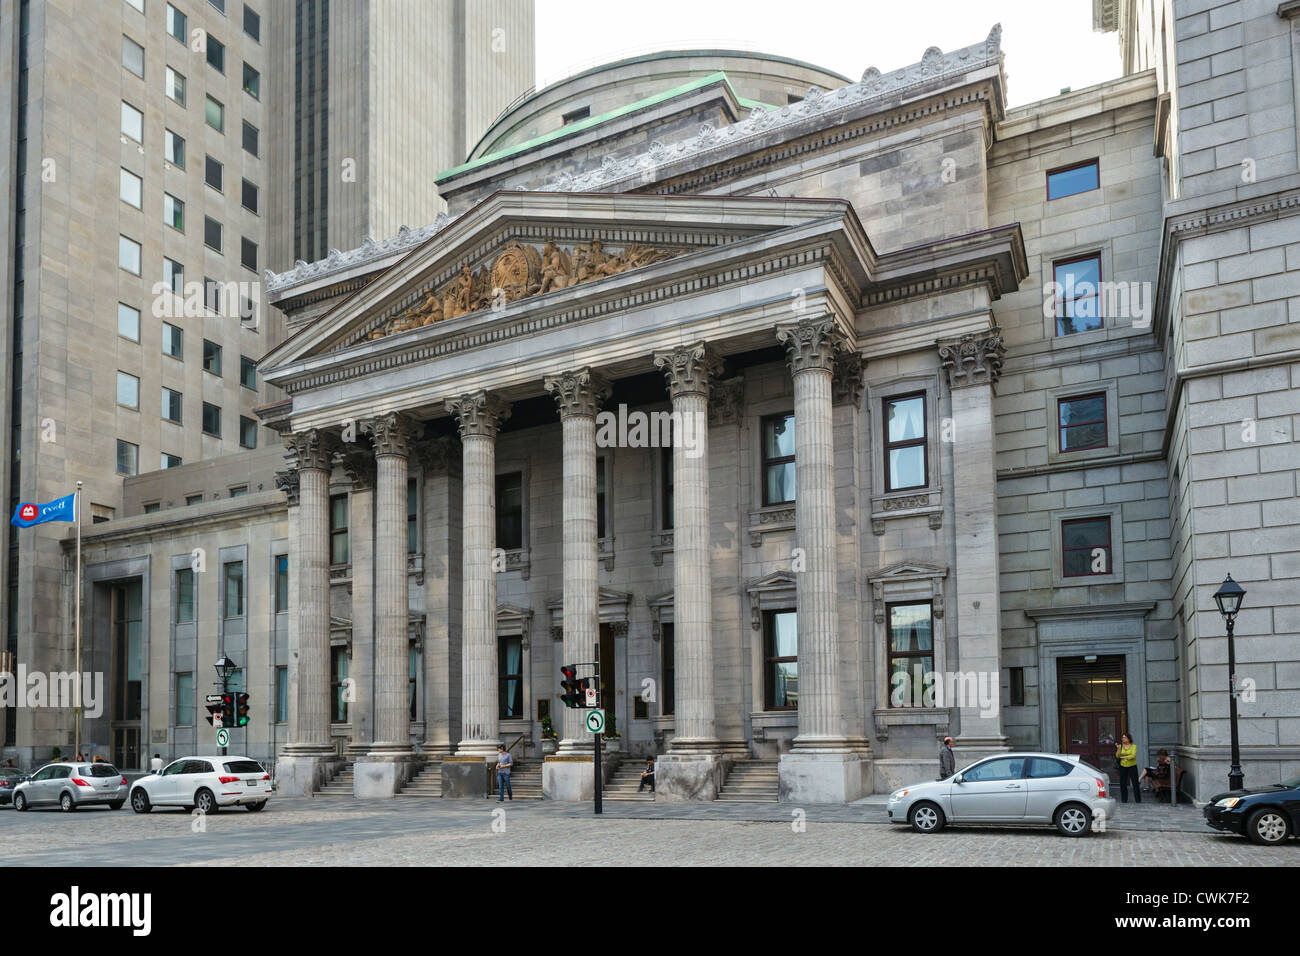 L'édifice de la Banque de Montréal sur la Place d'armes, rue Saint-Jacques, Vieux Montréal, Québec, Canada Banque D'Images